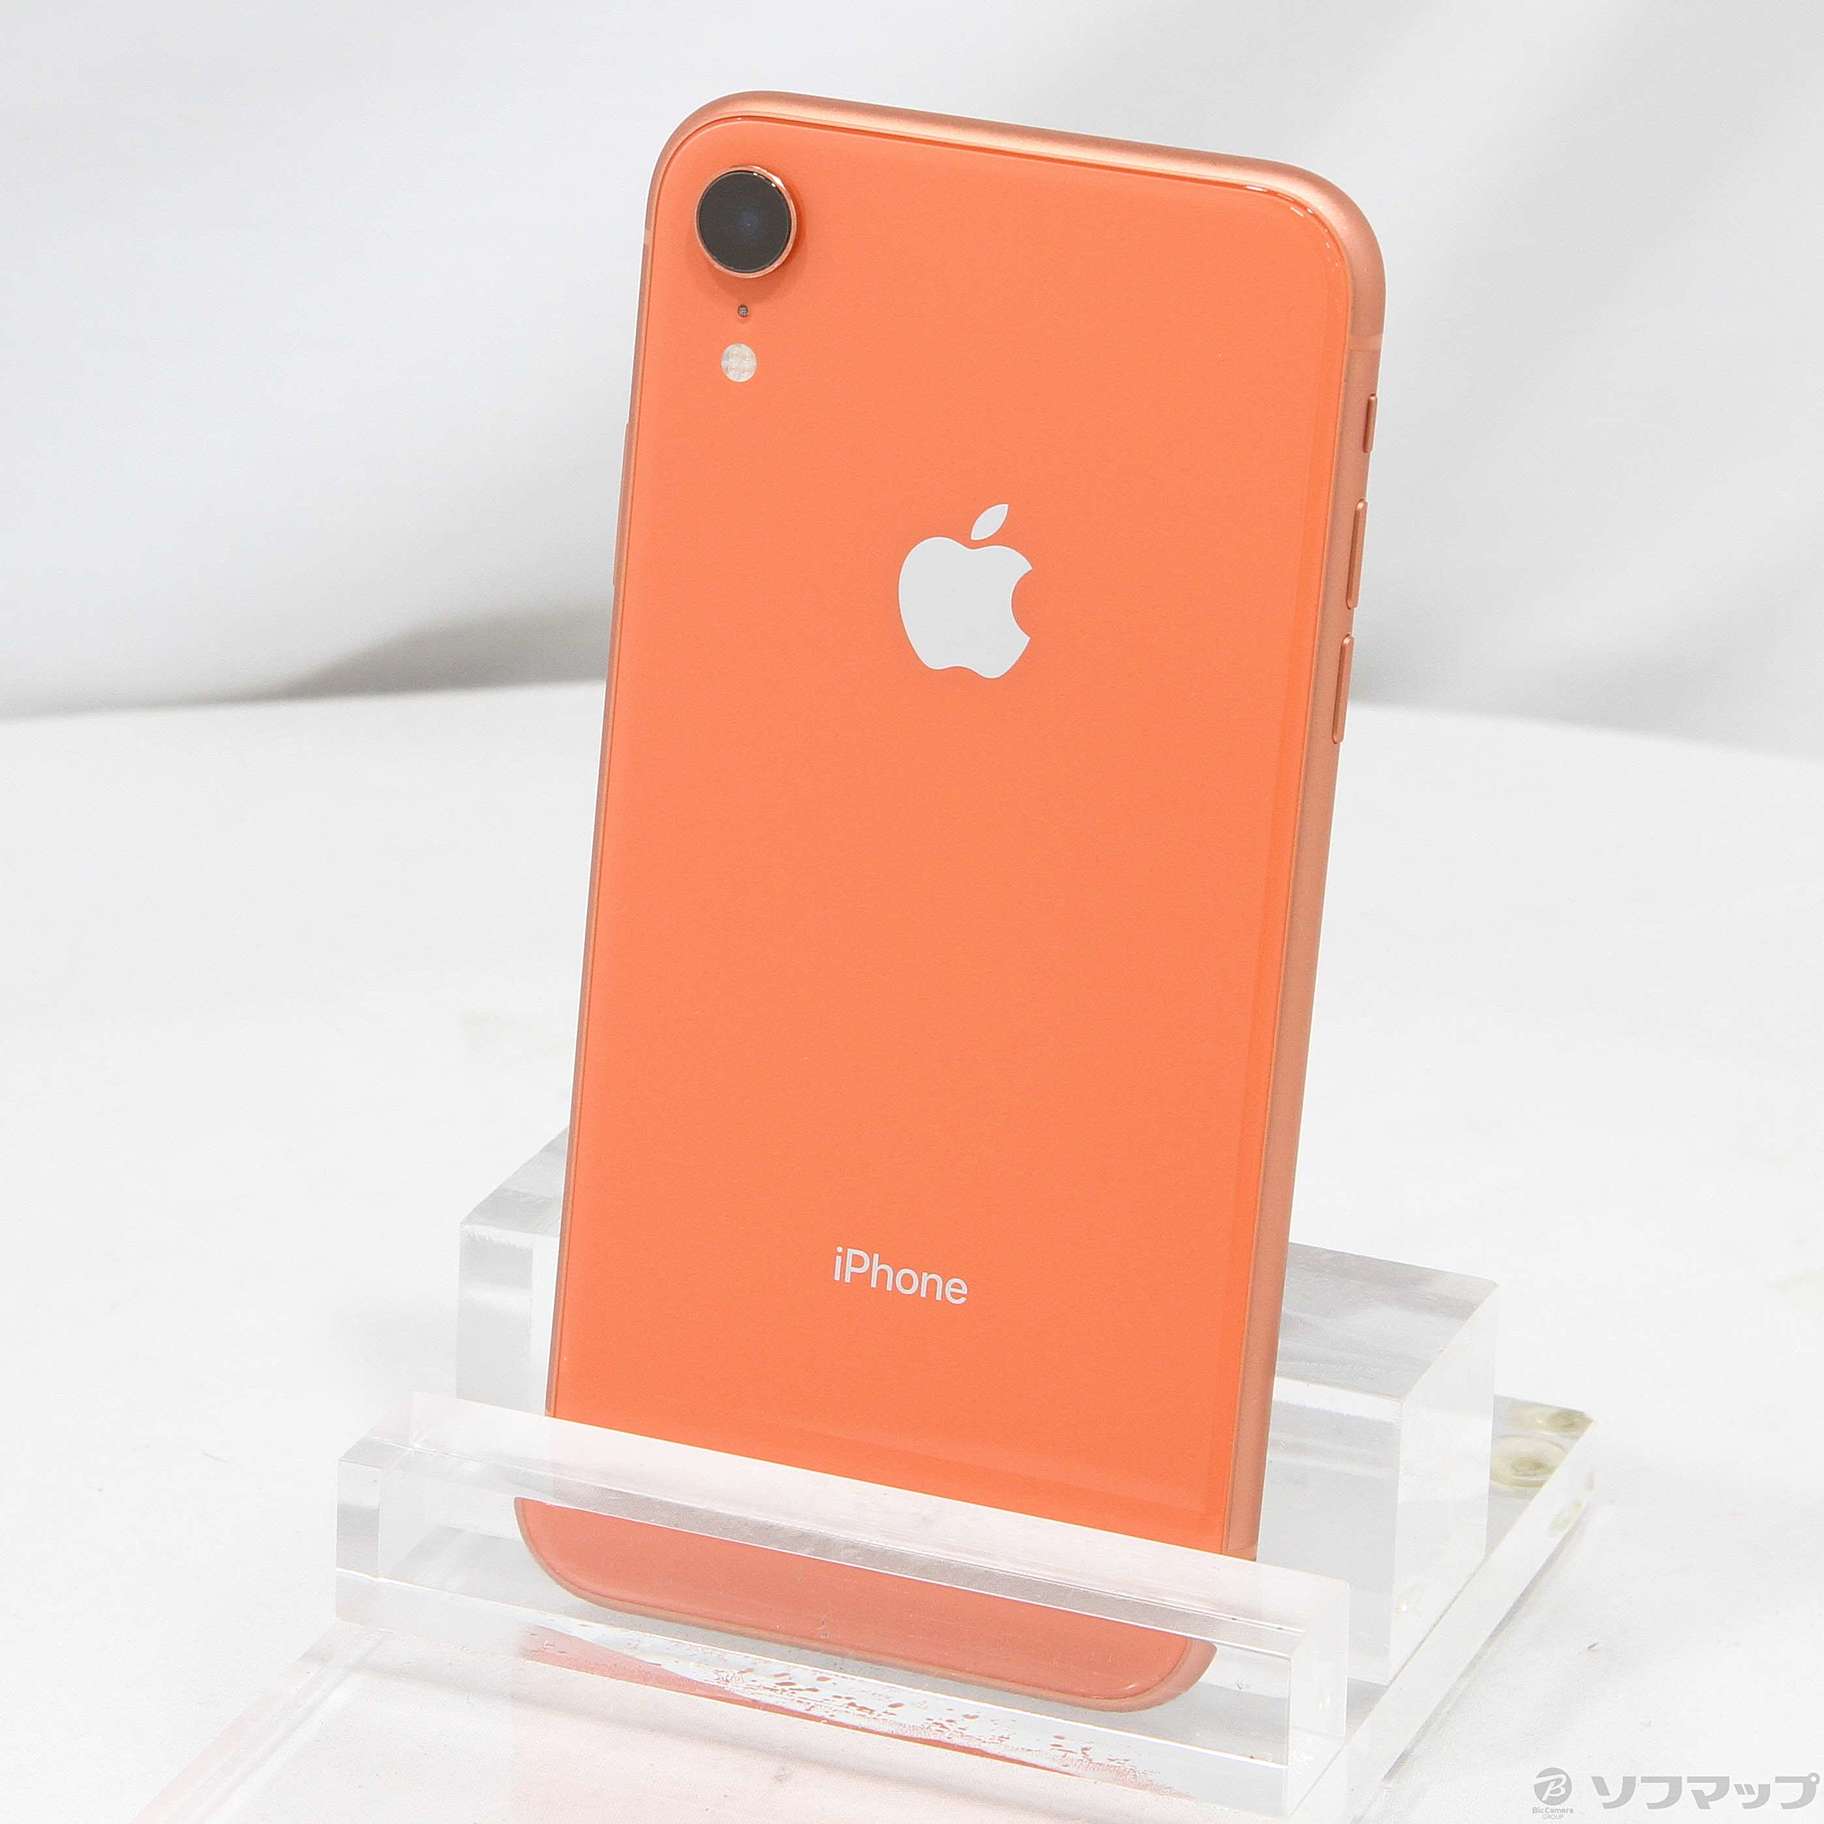 iPhone XR Coral 128 GB Softbank - www.stedile.com.br